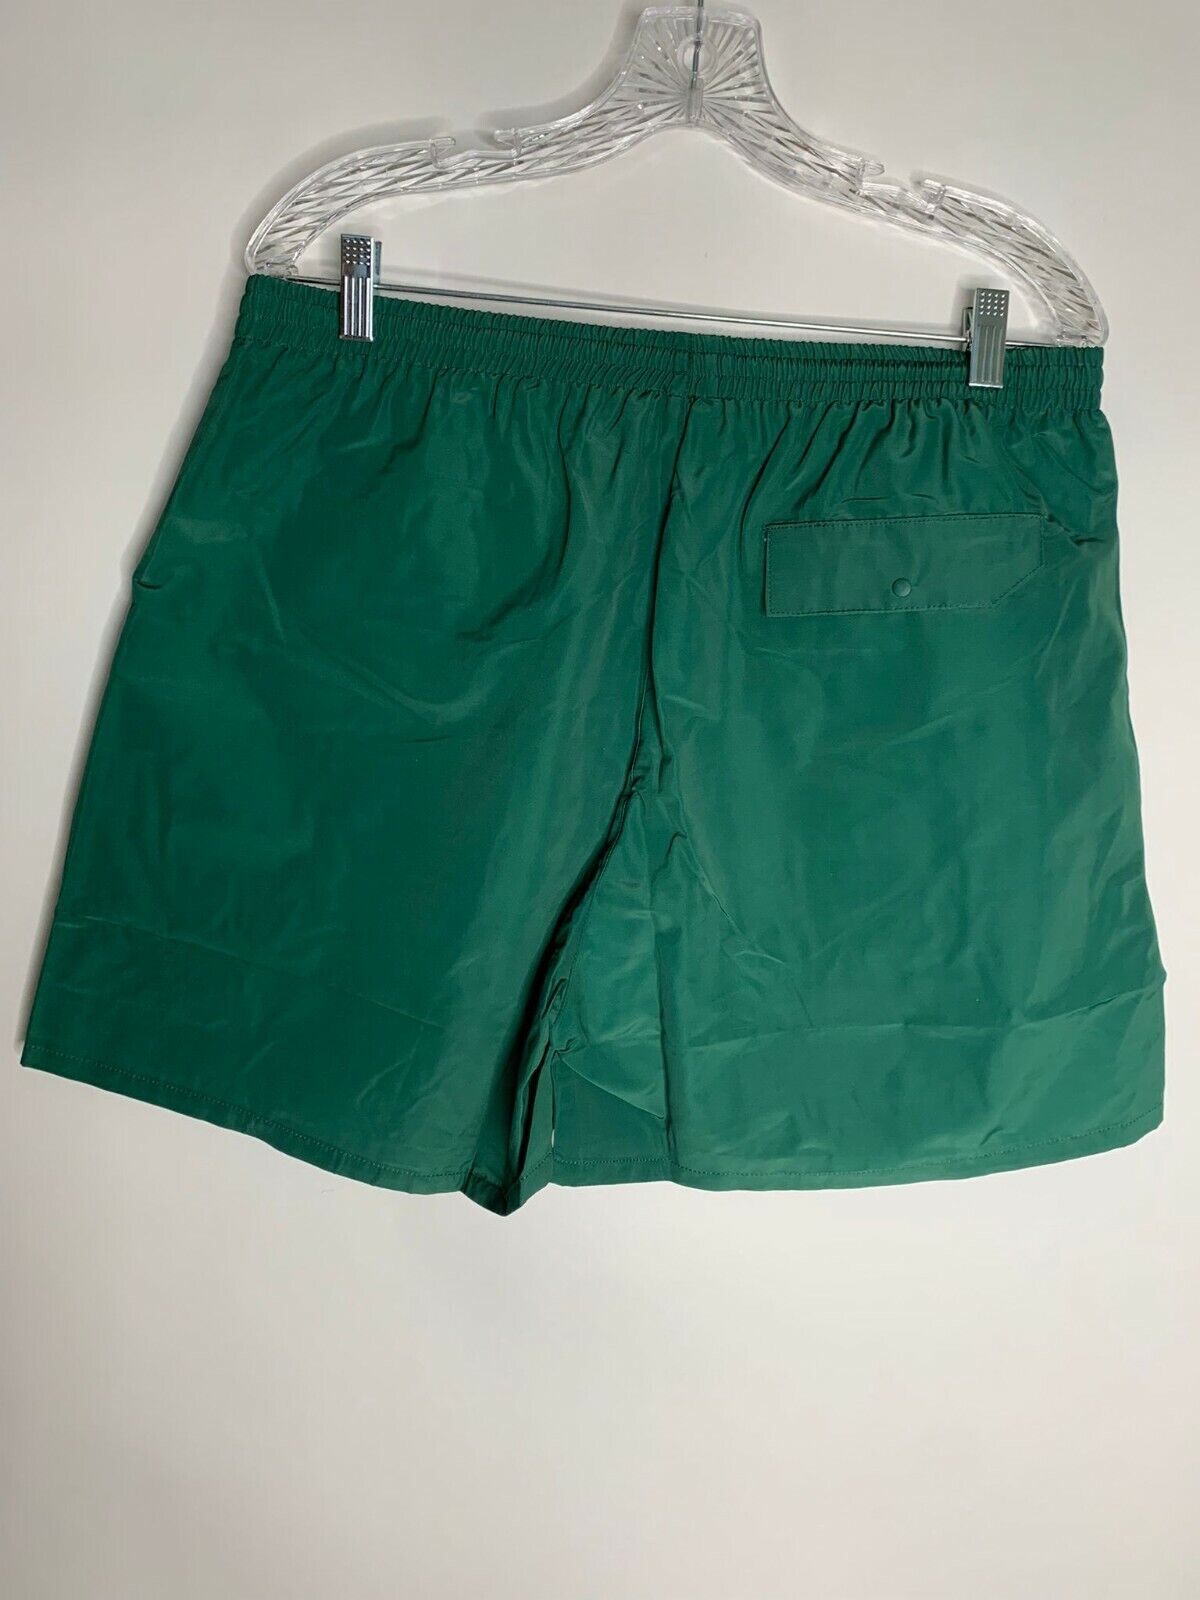 Dumbgood Mens XL Green Lined Jurassic Park Swim Trunks Swimsuit Logo Teal Shorts